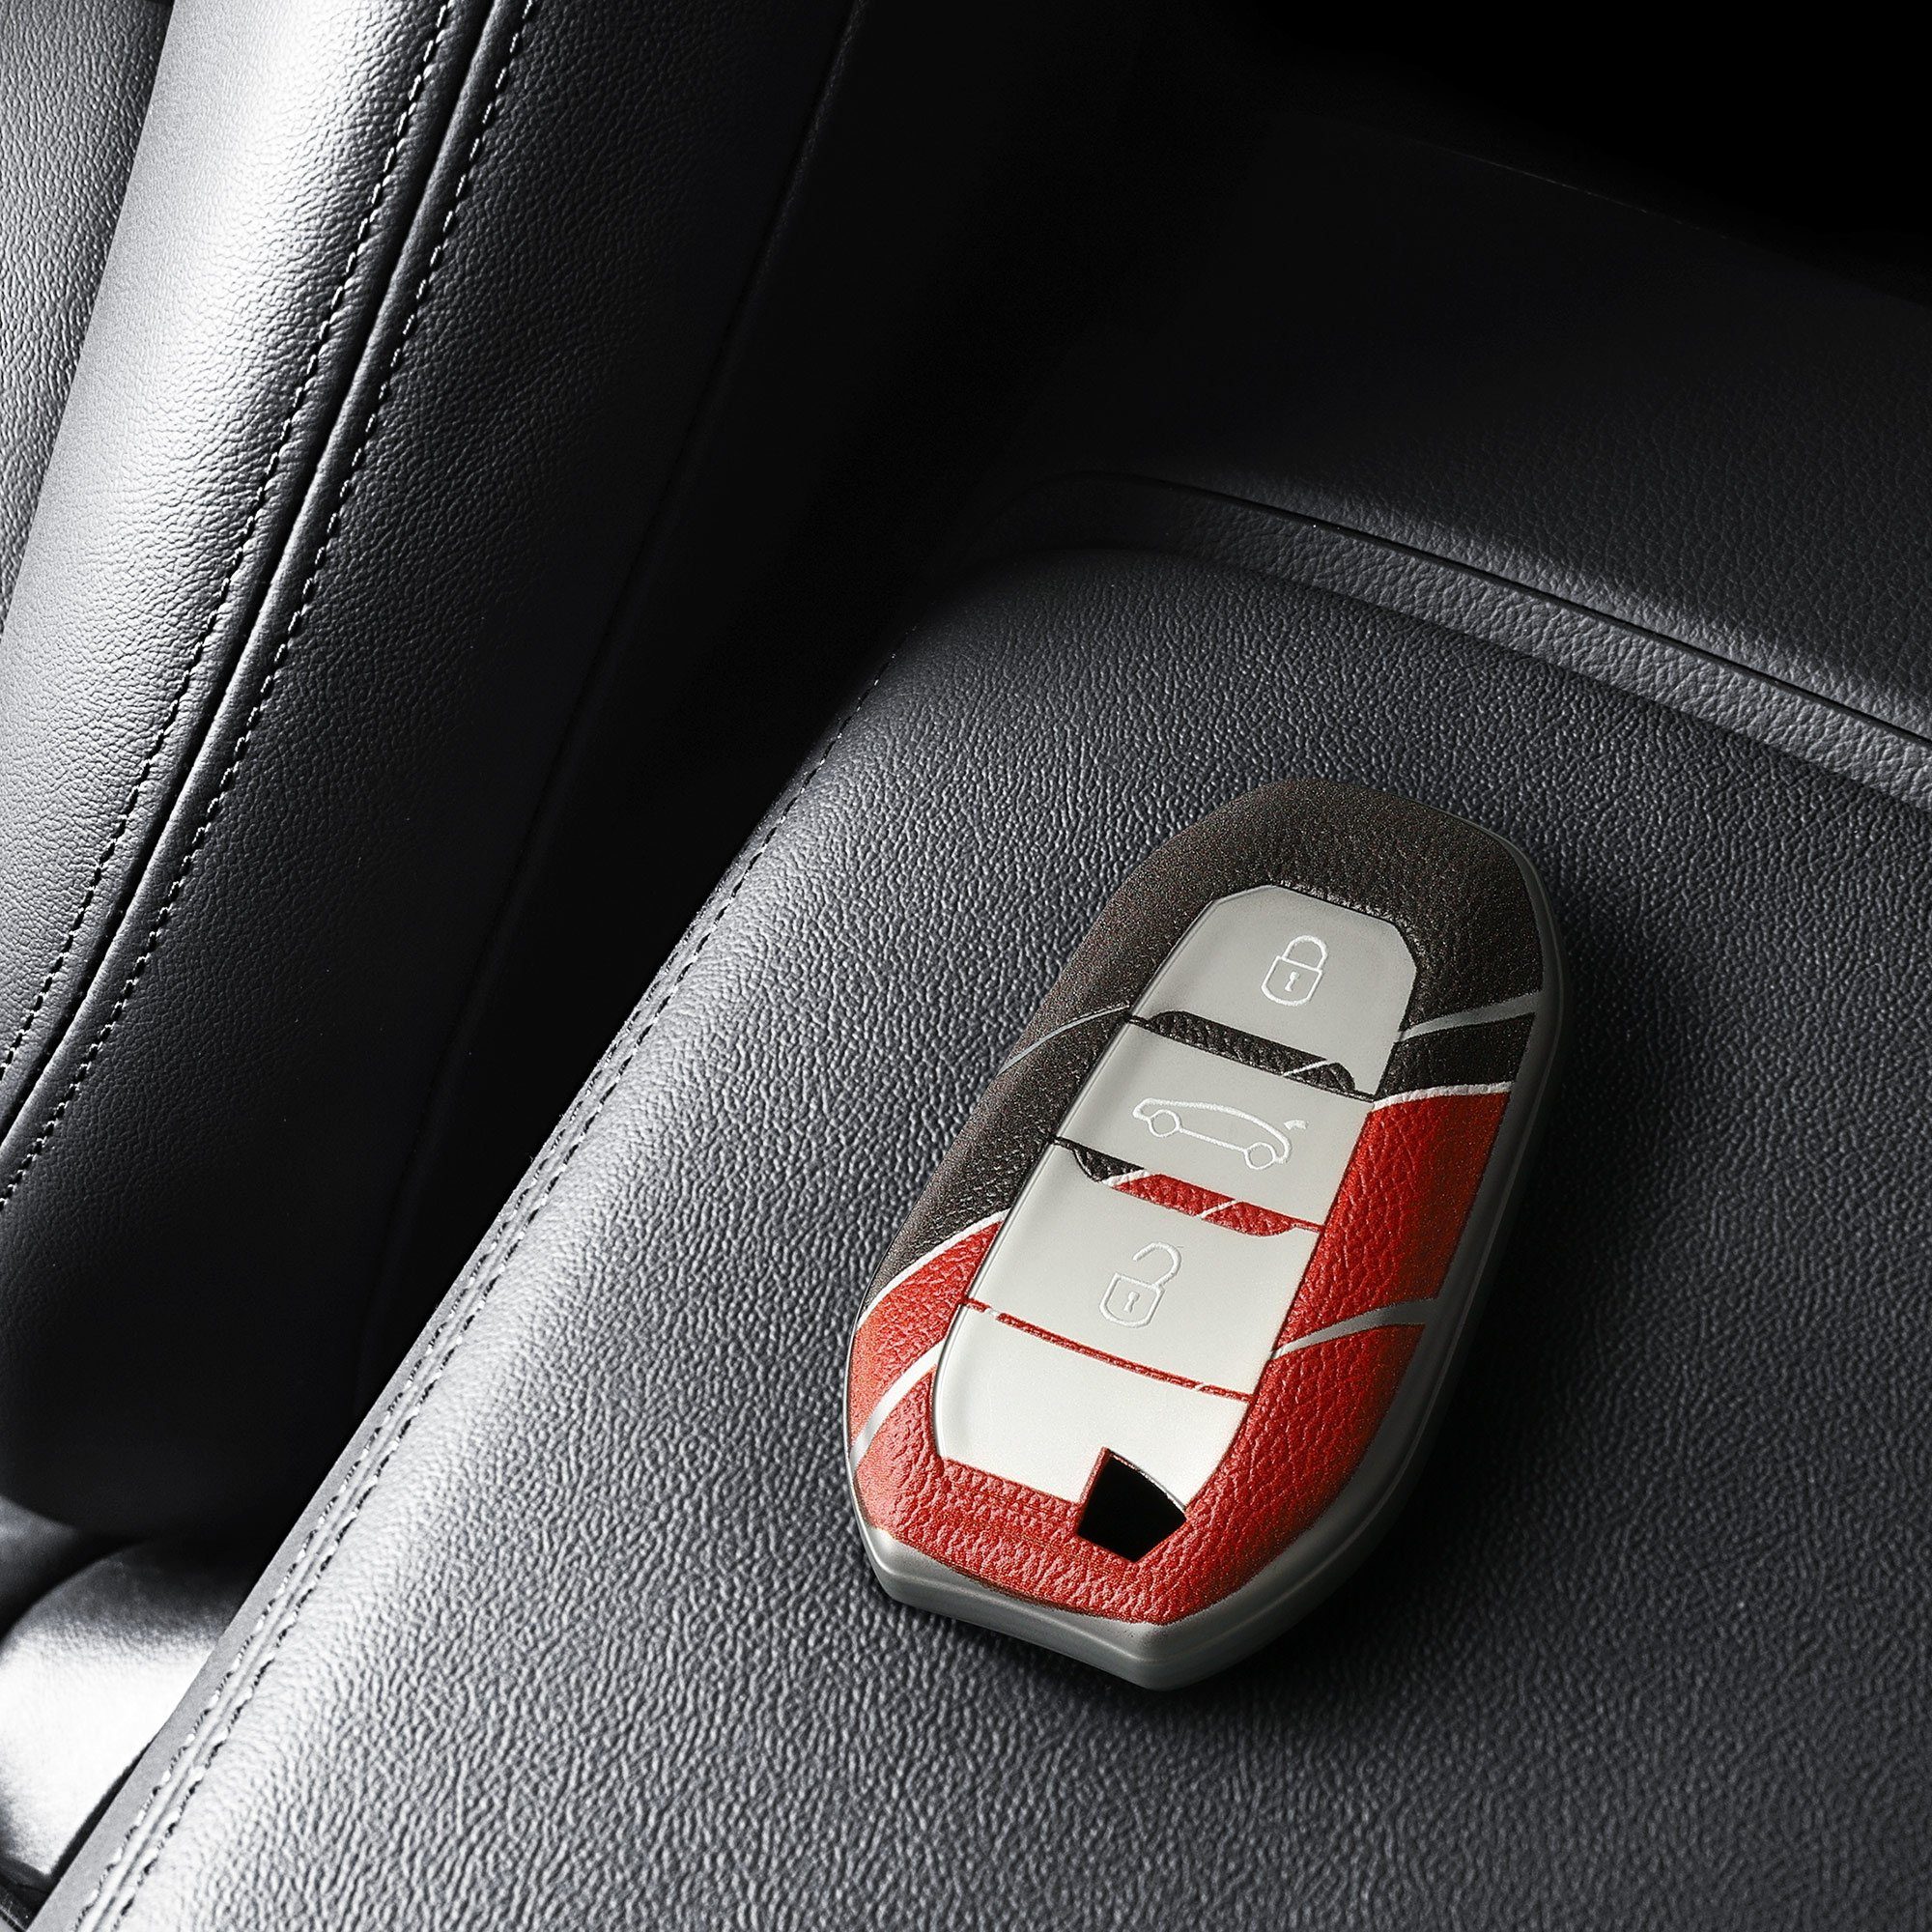 Grau Autoschlüssel für kwmobile Citroen, Schlüsselhülle TPU Peugeot Hülle Schlüsseltasche Schutzhülle Cover